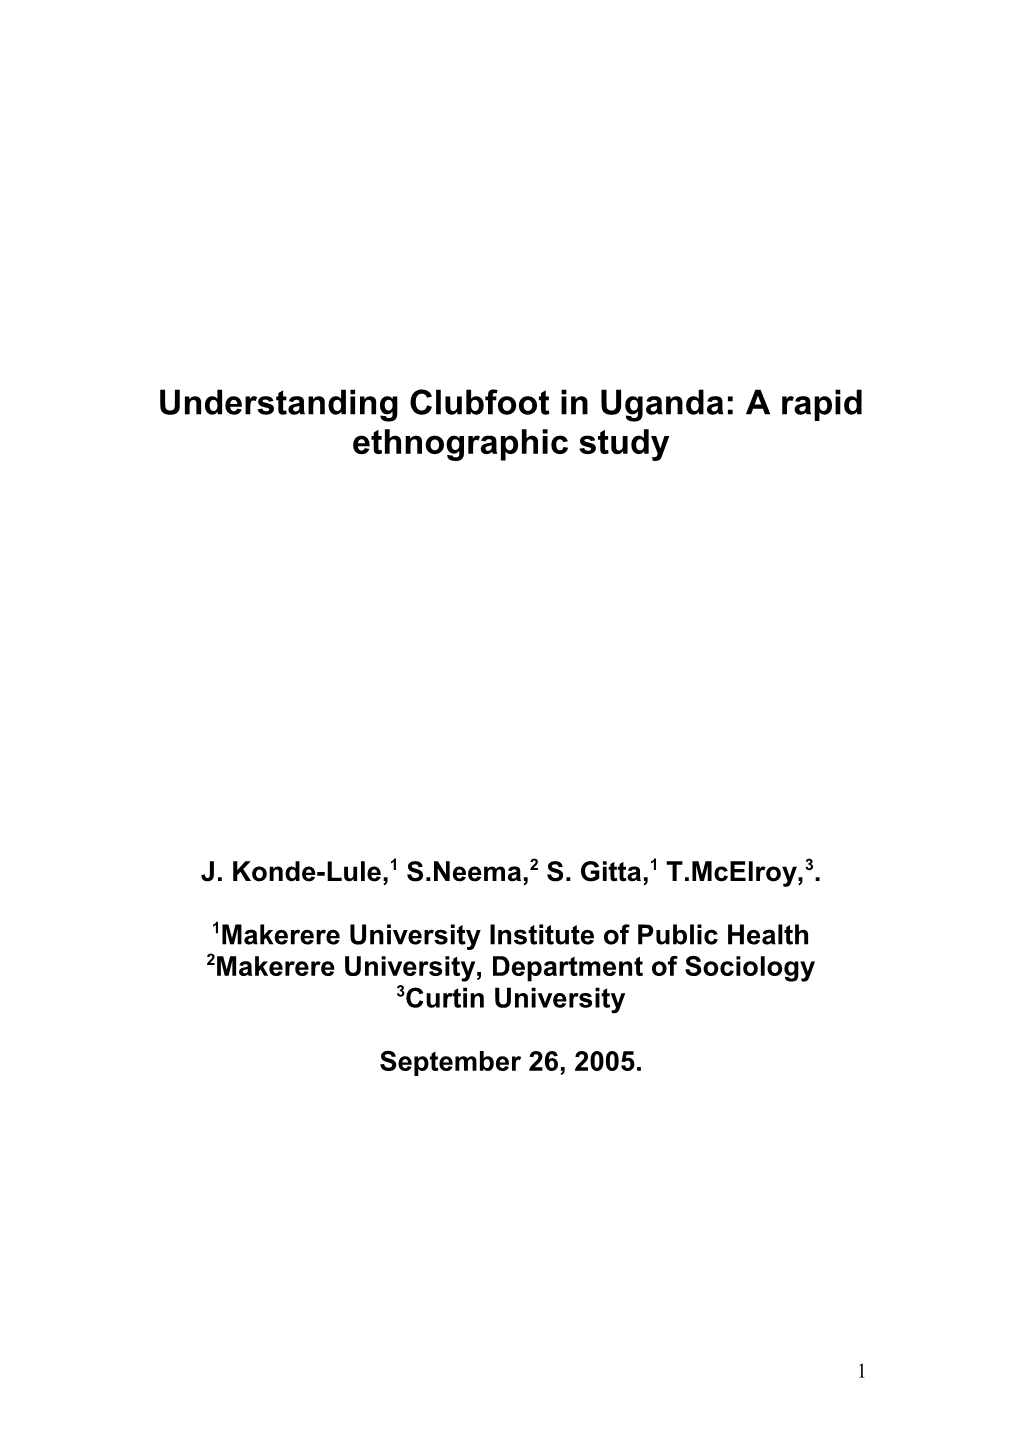 Understanding Clubfoot in Uganda: a Rapid Ethnographic Study